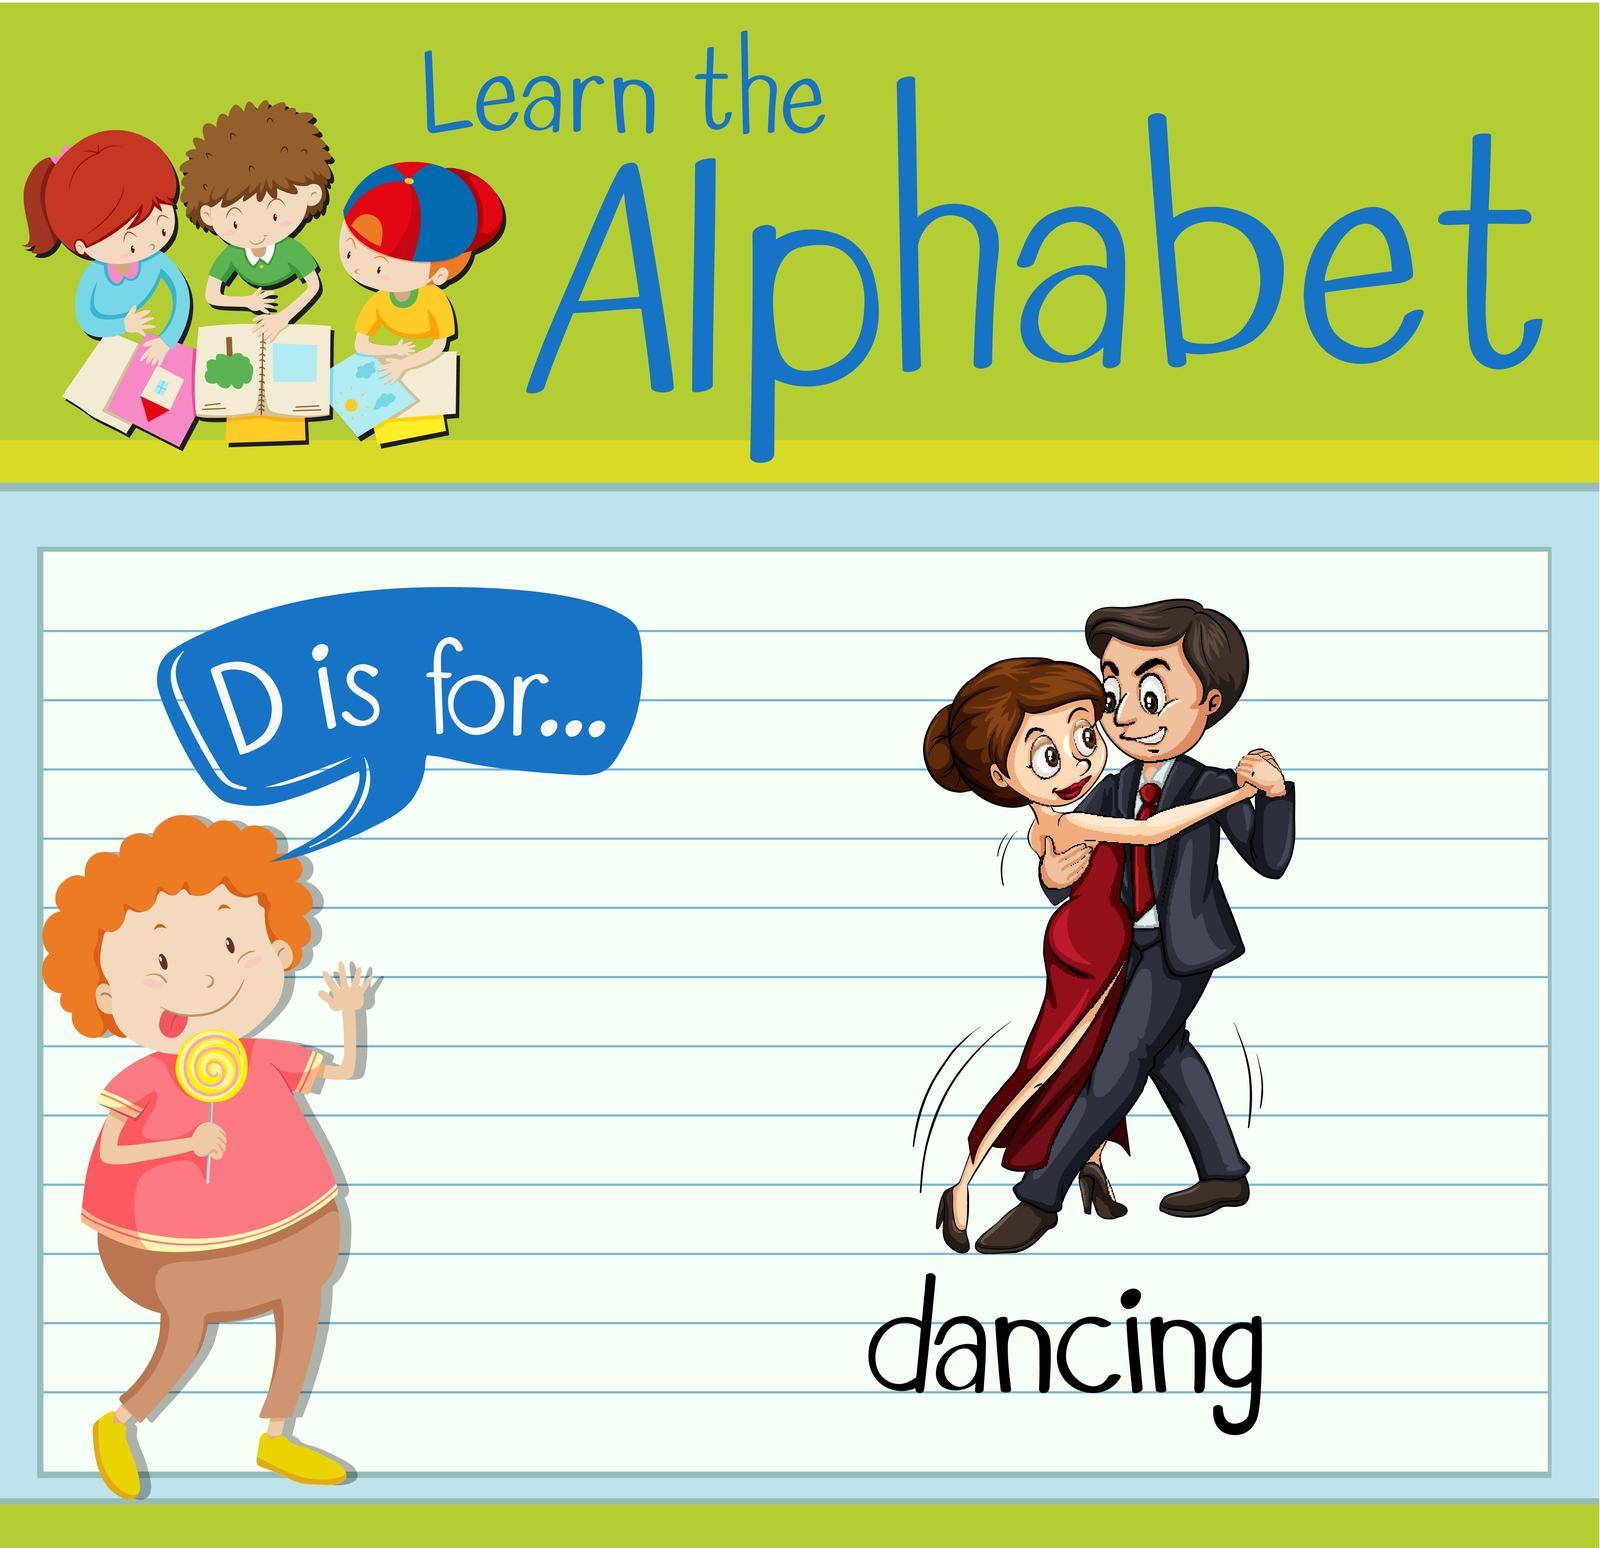 Flashcard letter D is for dancing illustration